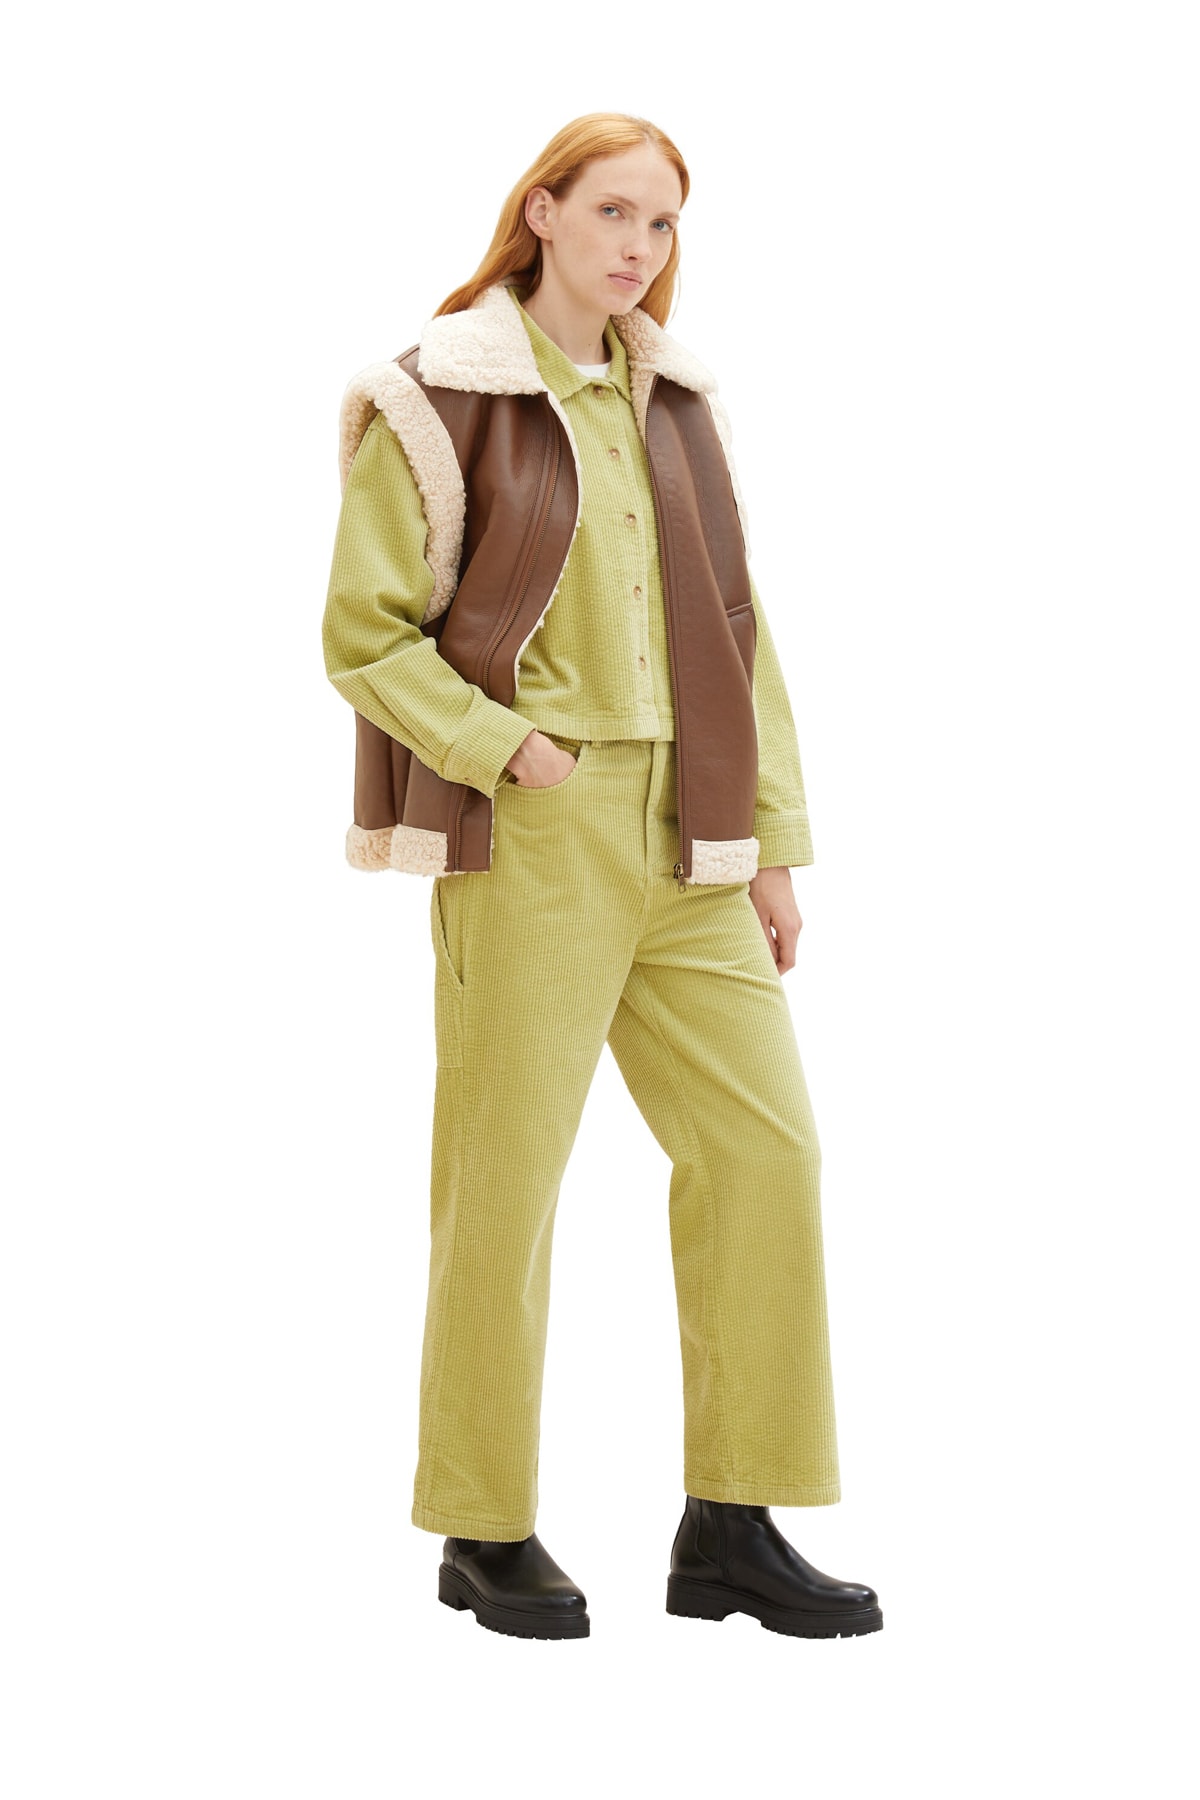 Брюки Женские/Девочки шнуровые брюки Carpender Tom Tailor Denim, оранжевый рубашка tom tailor размер l оранжевый